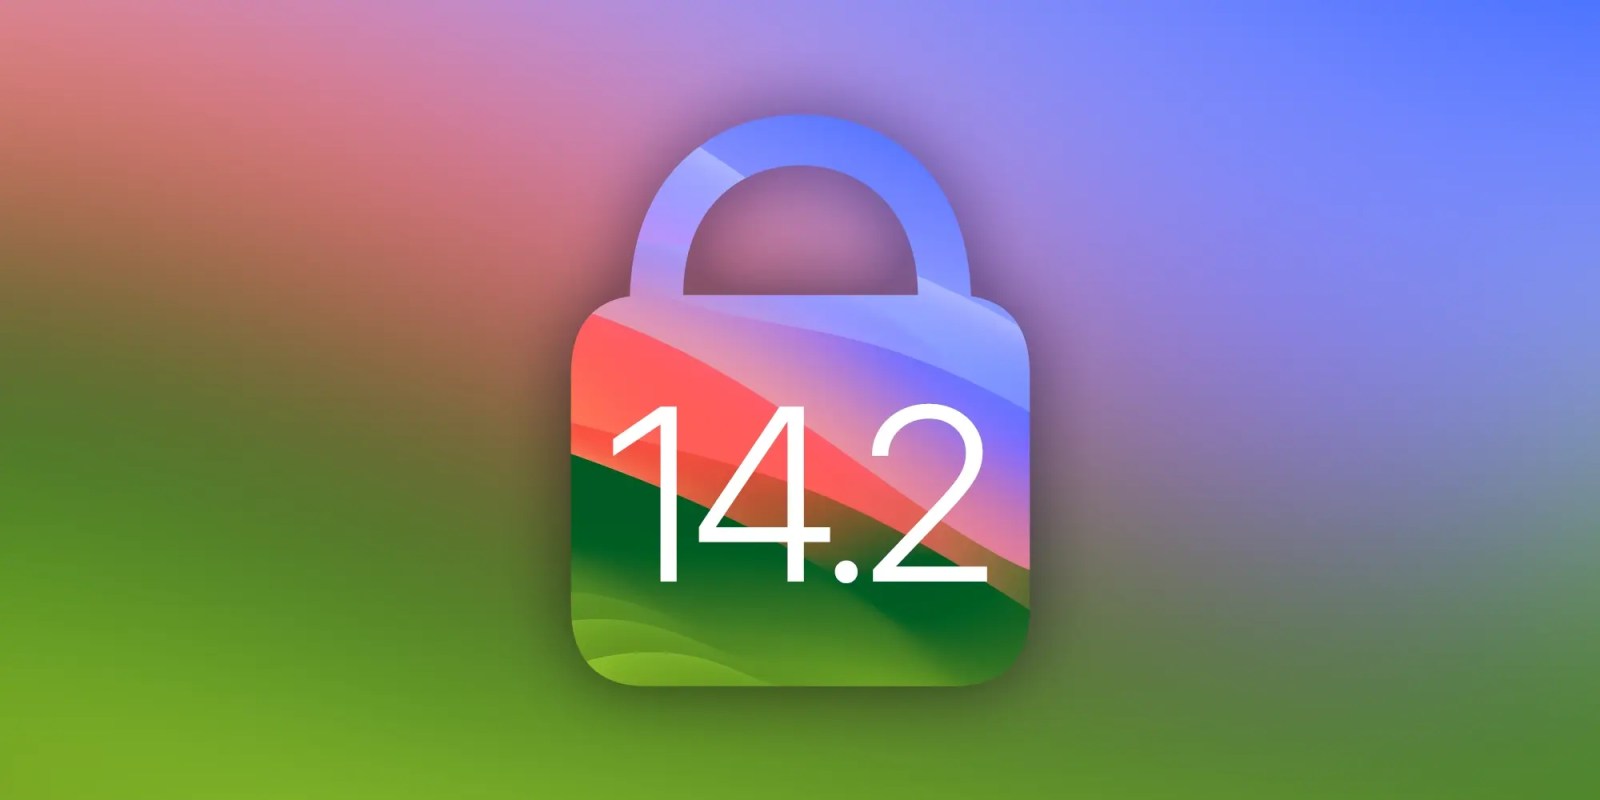 macOS Sonoma 14.2 security updates